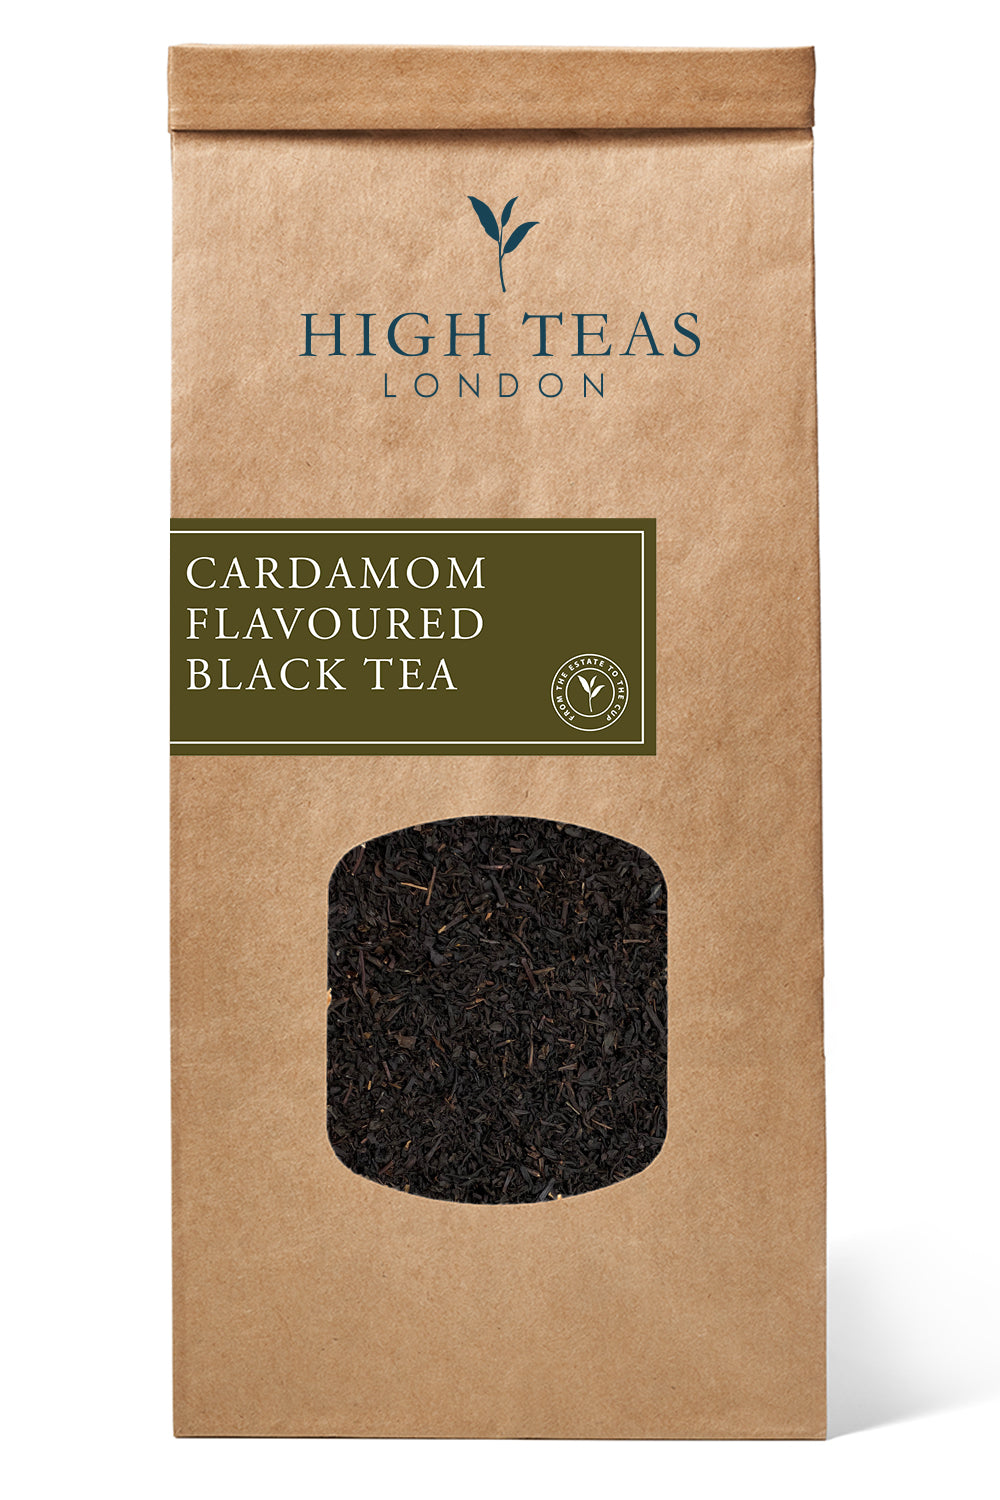 Cardamom Flavoured Black Tea-250g-Loose Leaf Tea-High Teas